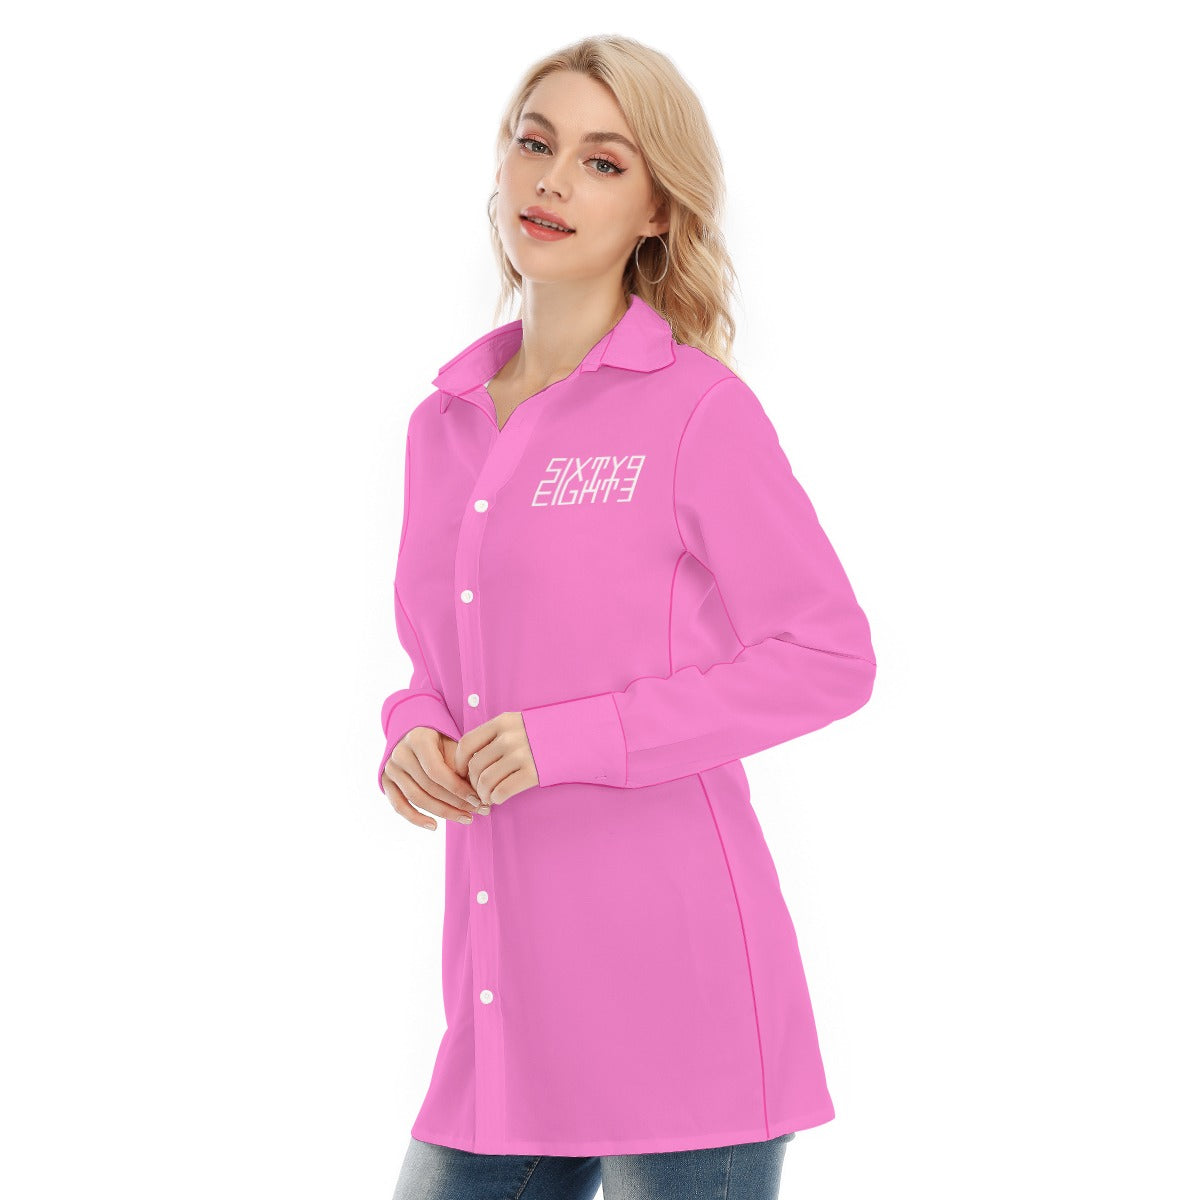 Sixty Eight 93 Logo White Pink Women's Long Shirt